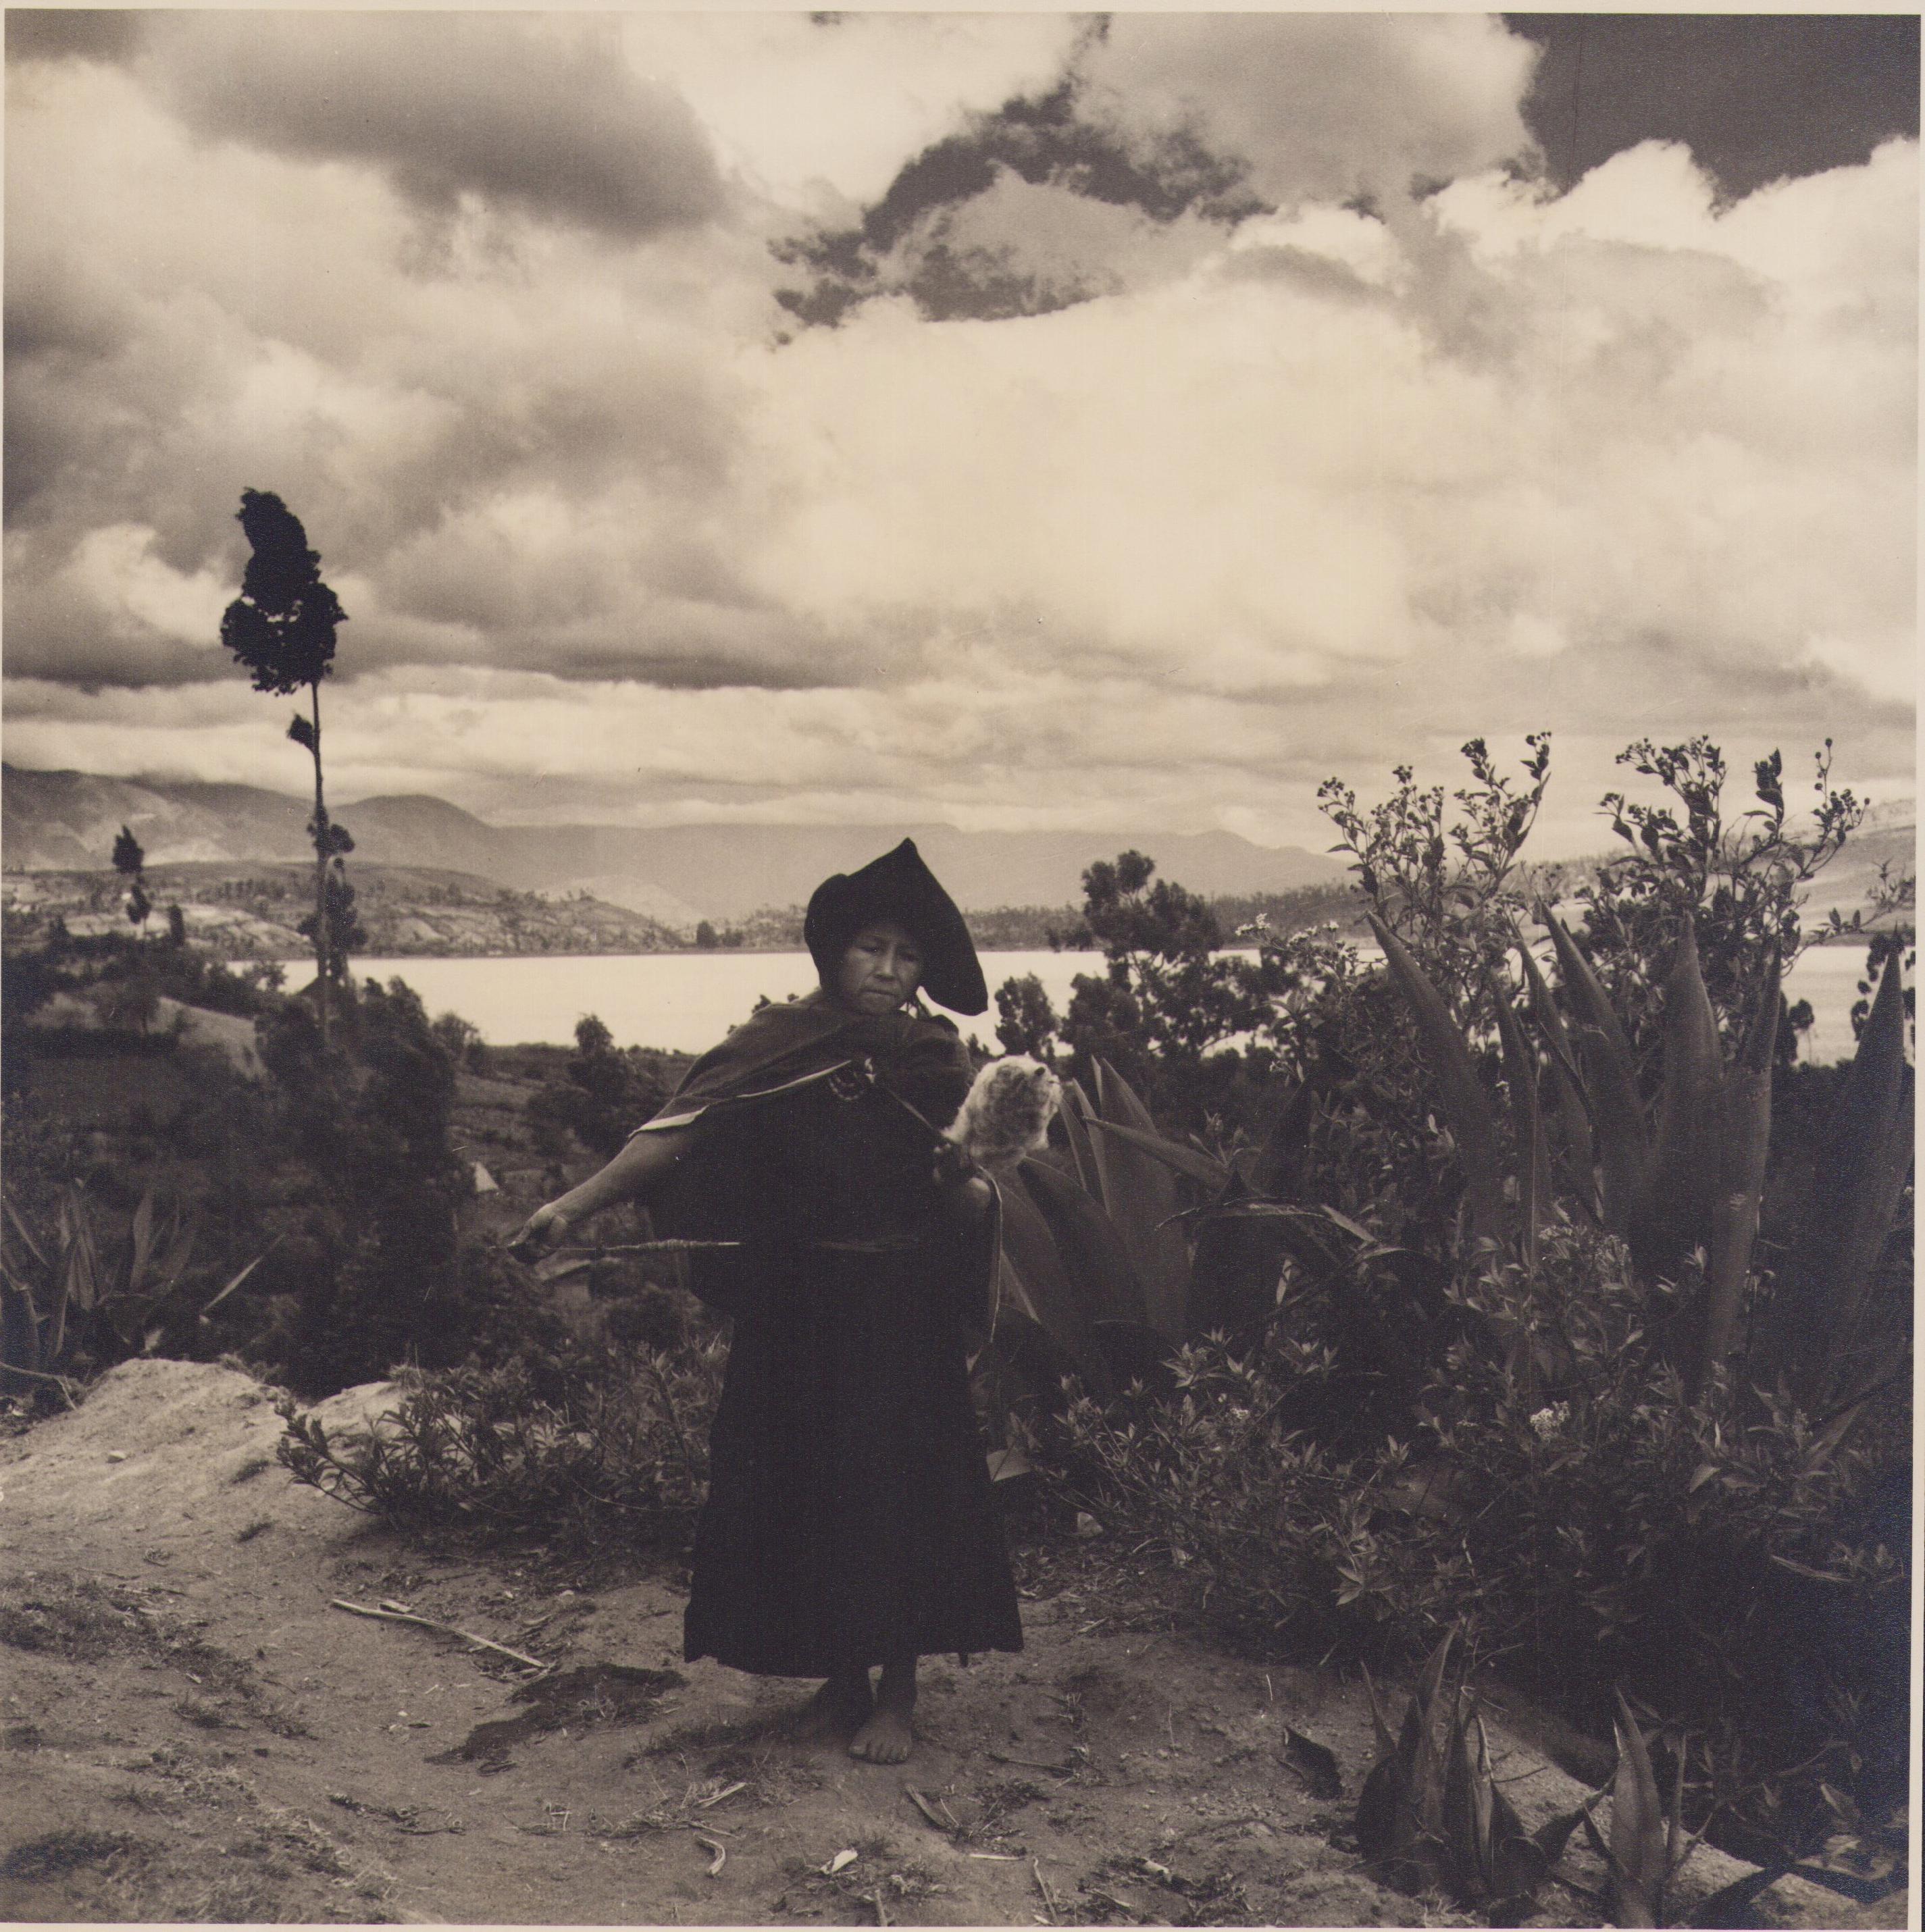 Hanna Seidel Portrait Photograph - Ecuador, Woman, Black and White Photography, 1960s, 24, 2 x 24, 2 cm